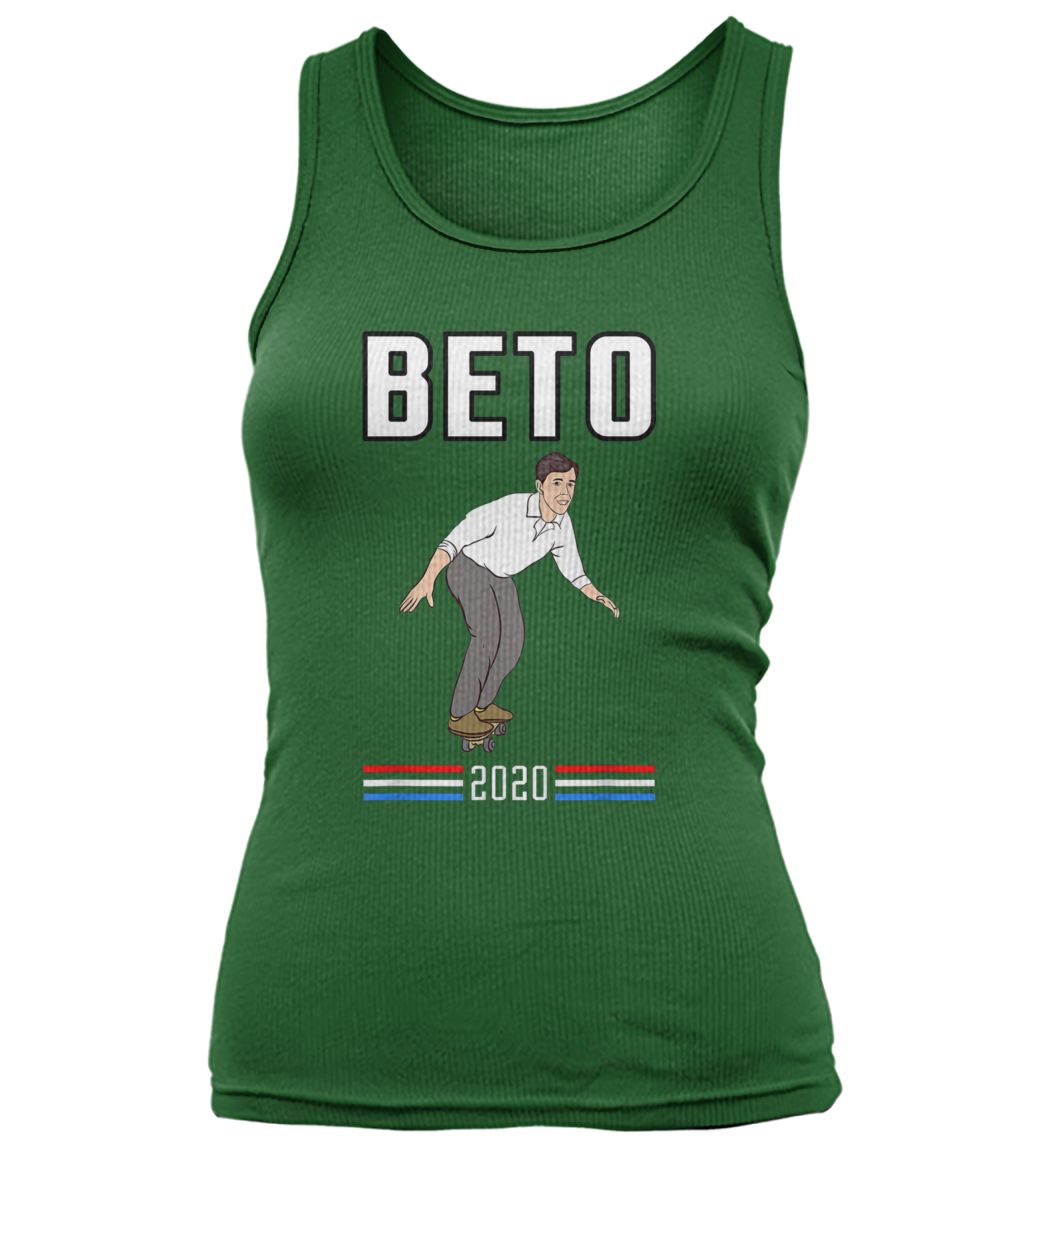 Beto o'rourke for president 2020 skateboarding thrasher women's tank top